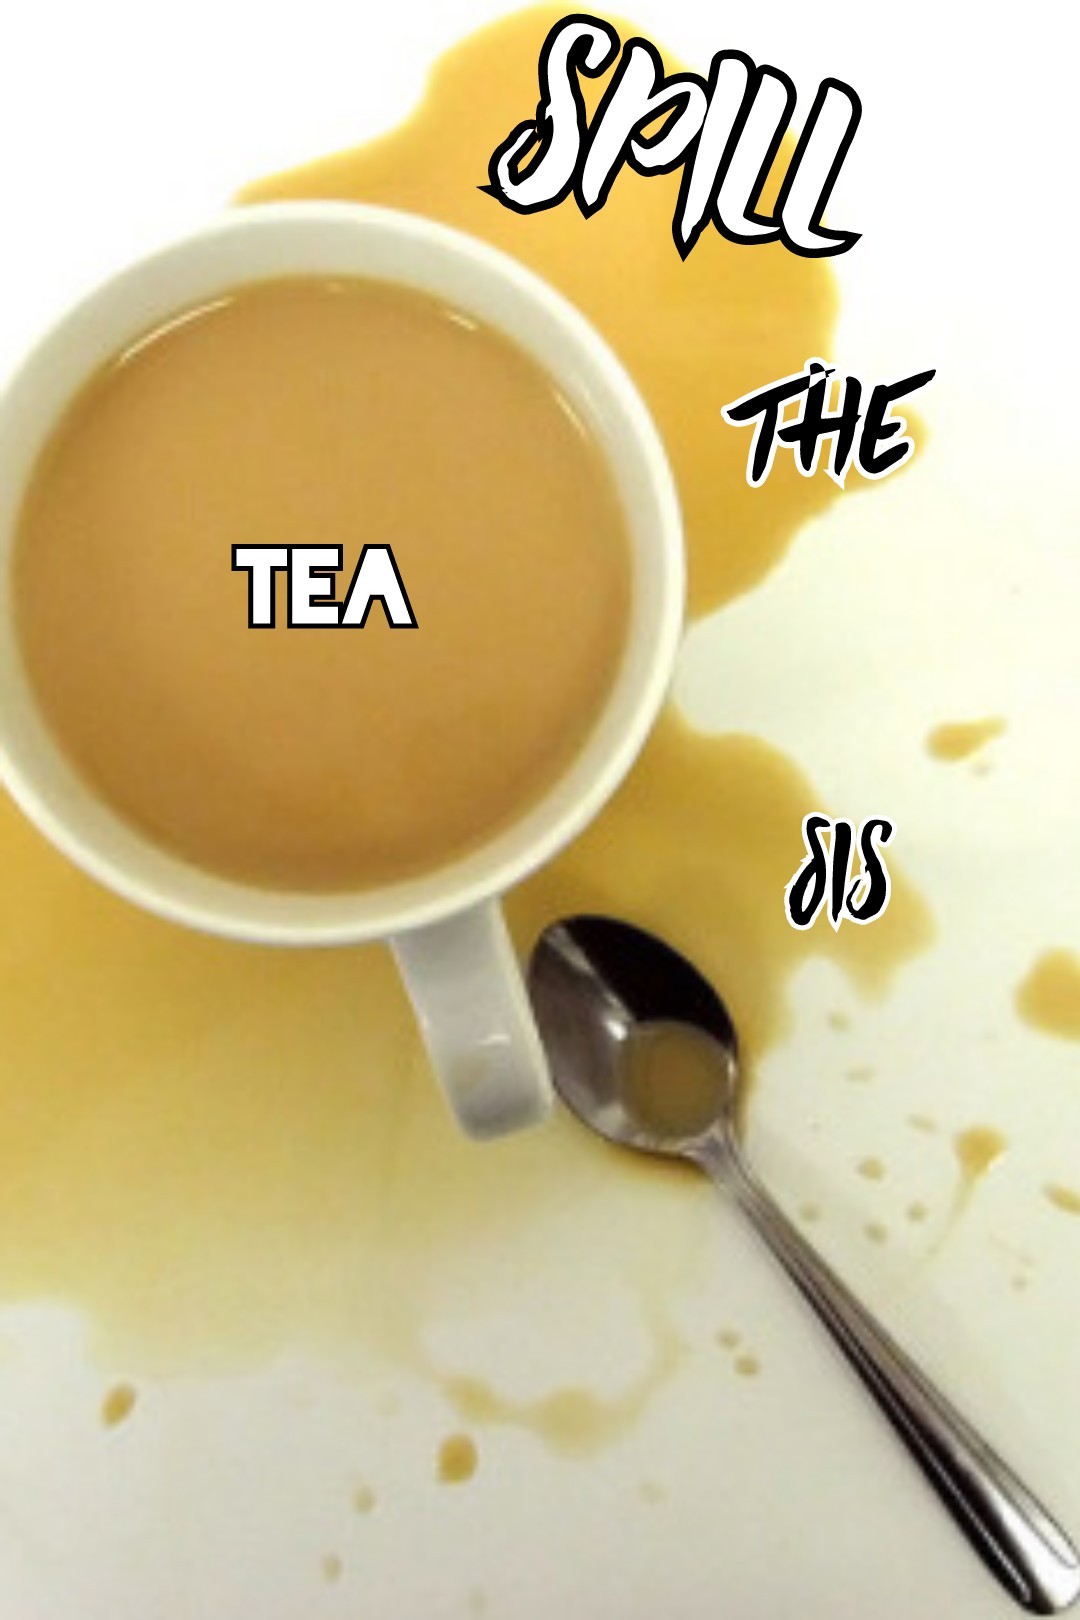 Spill the tea sis